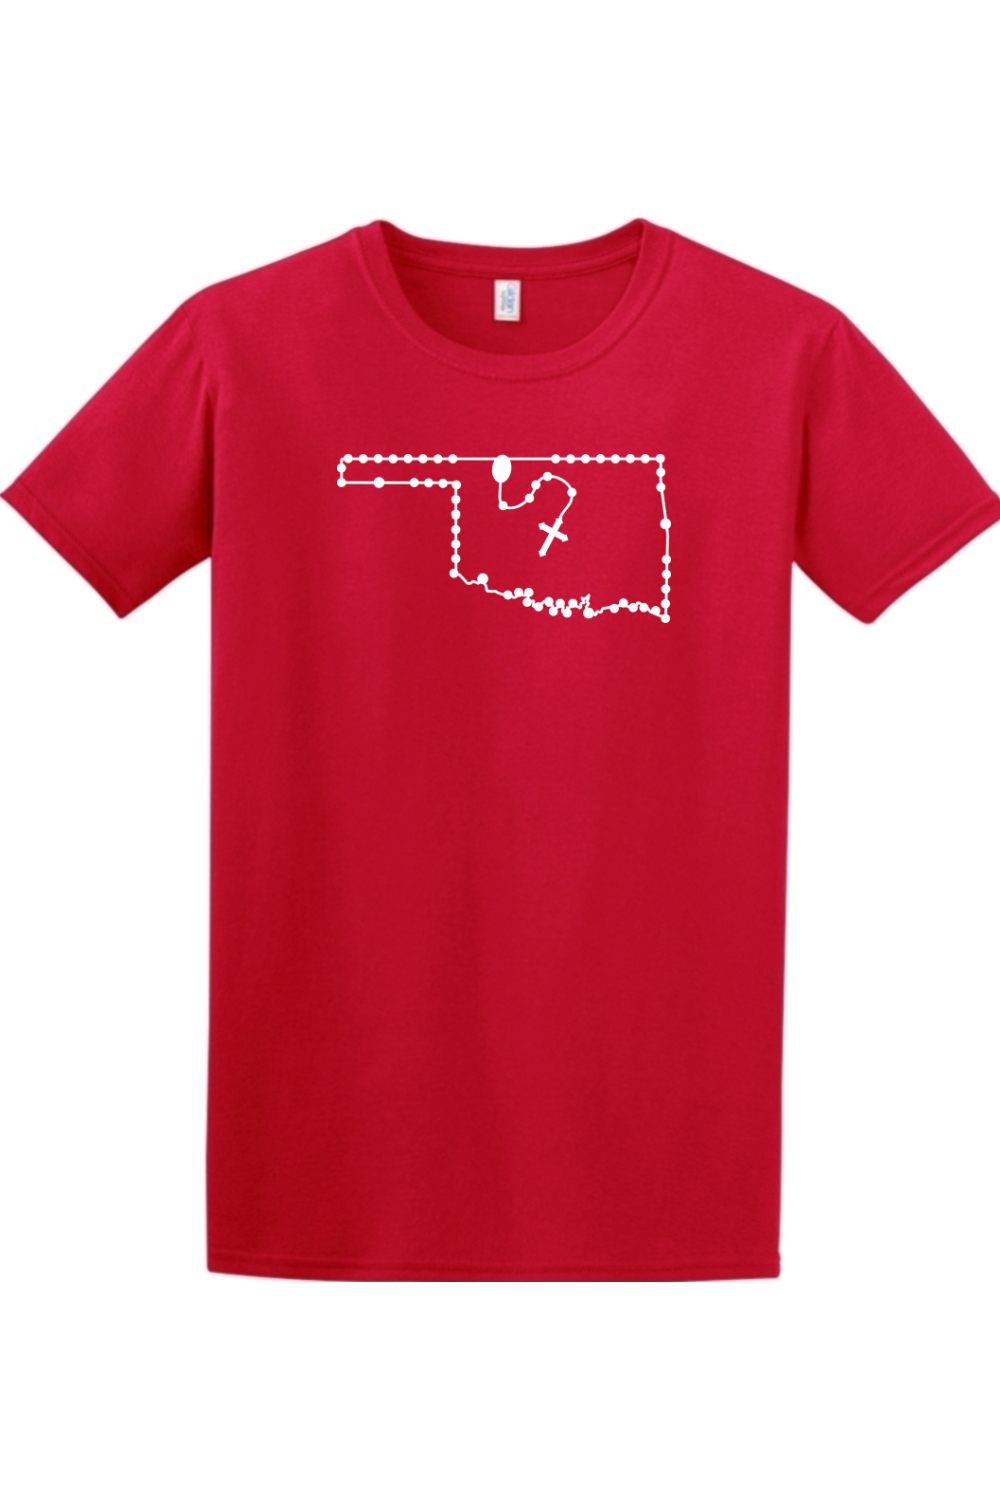 Oklahoma Rosary Adult T-shirt